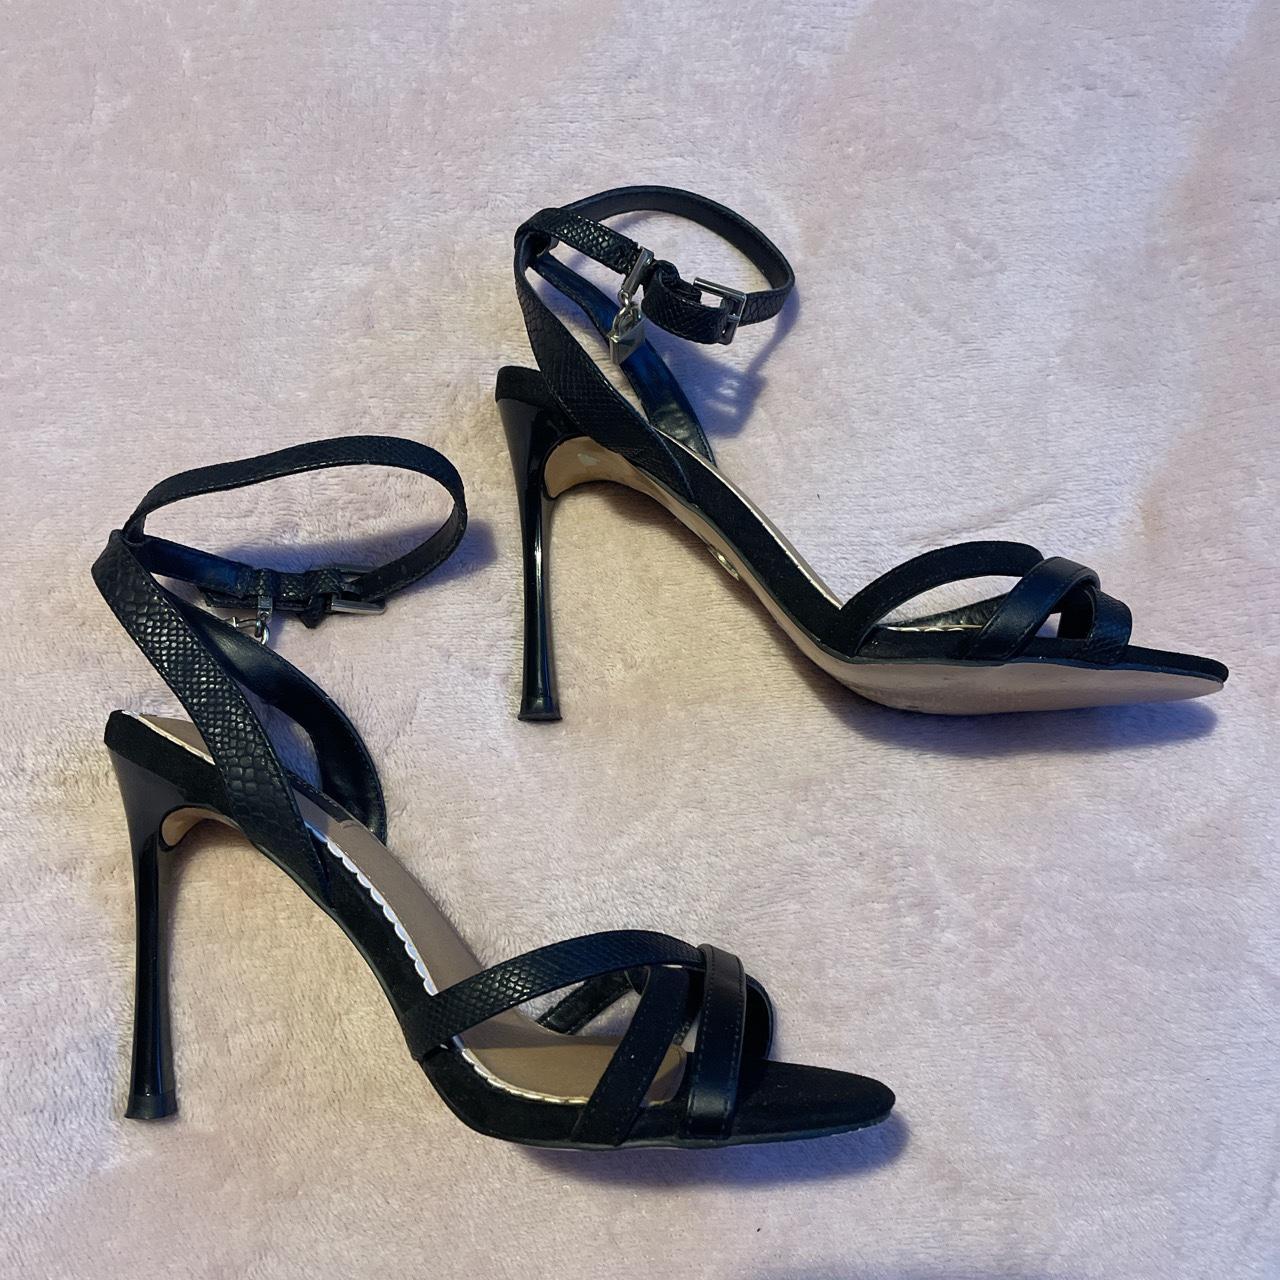 River island black stiletto heel Size 4 wide fit... - Depop